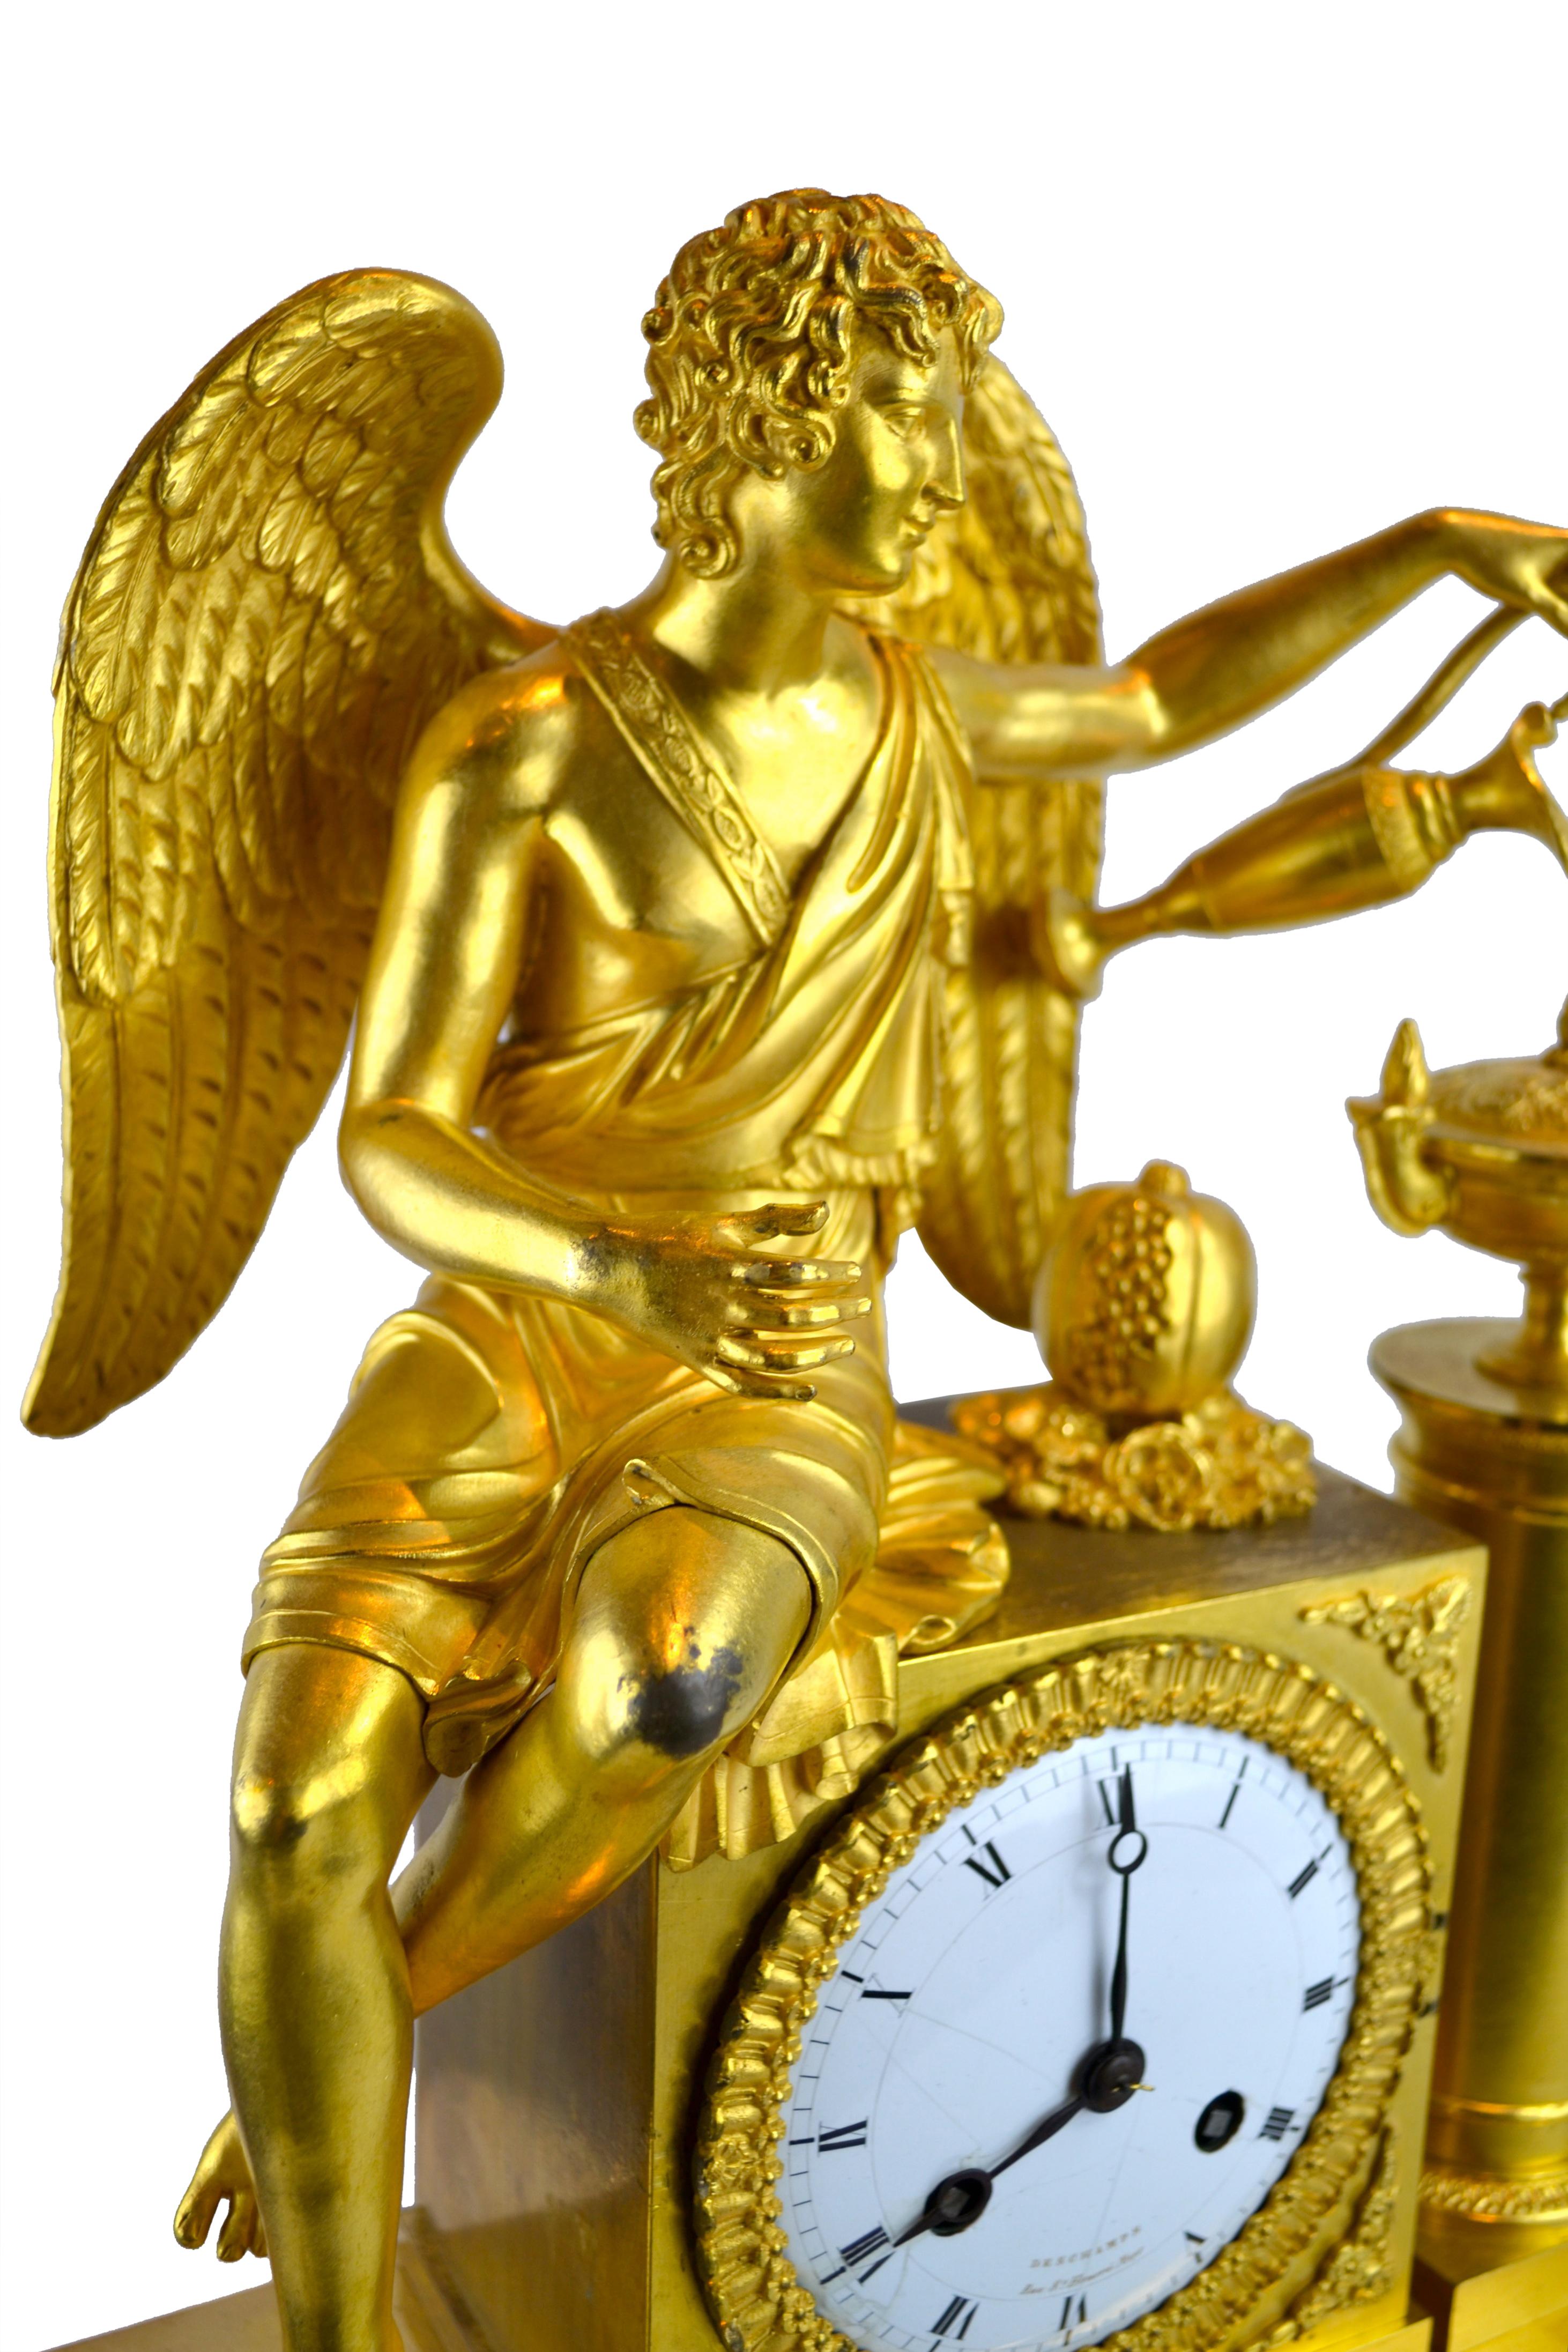 Une horloge figurative de style Empire français en bronze doré représentant une allégorie sur la façon dont l'amour nourrit la vie ou 